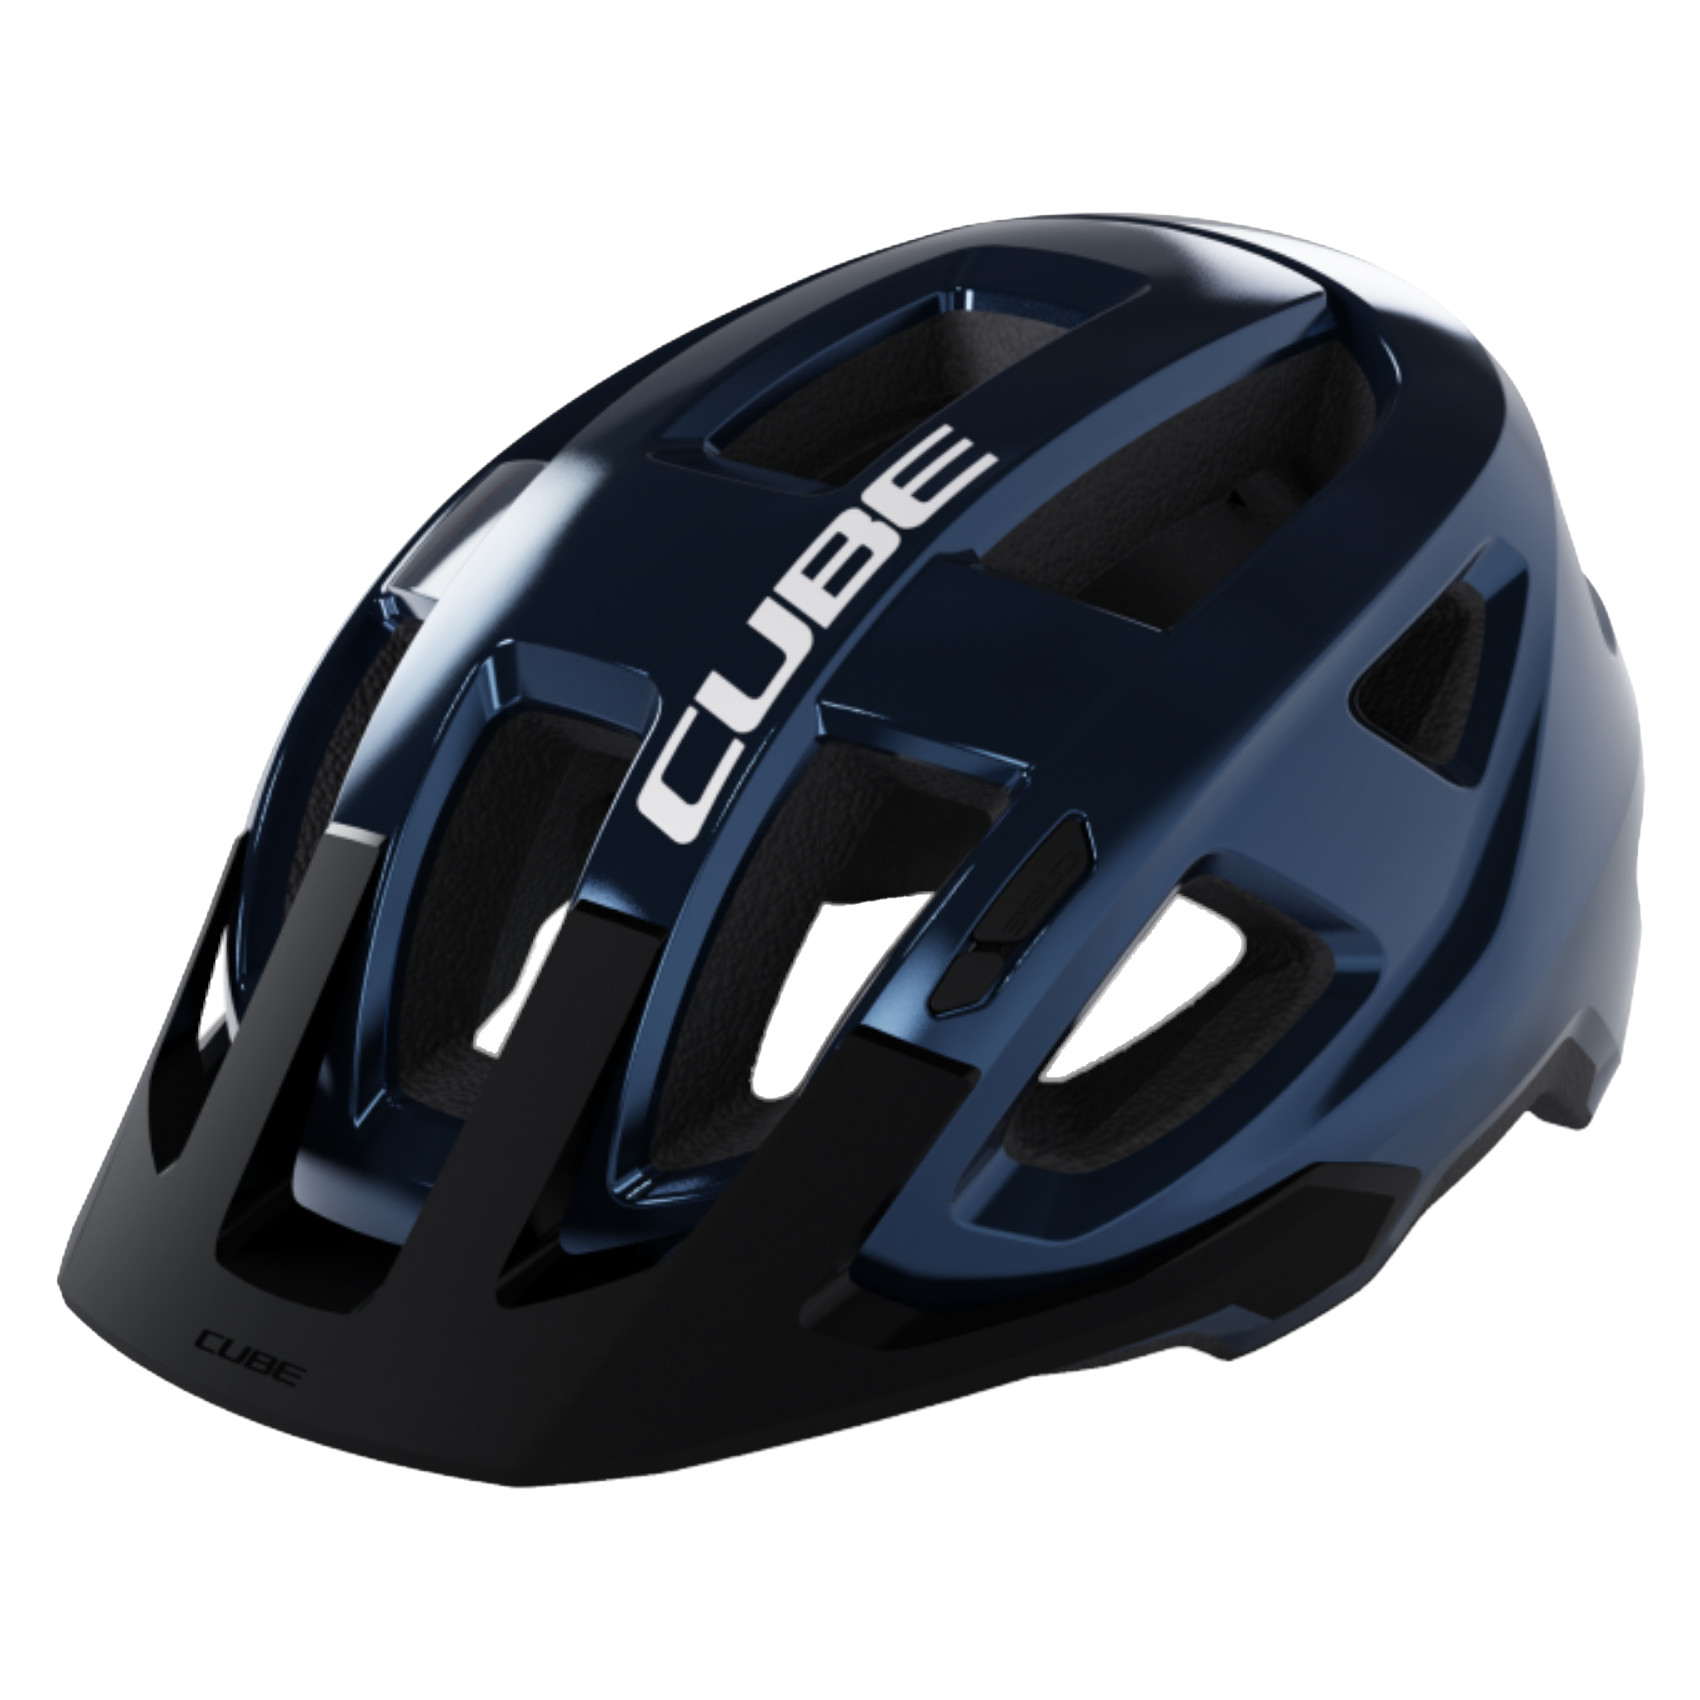 Produktbild von CUBE FLEET Helm - blau